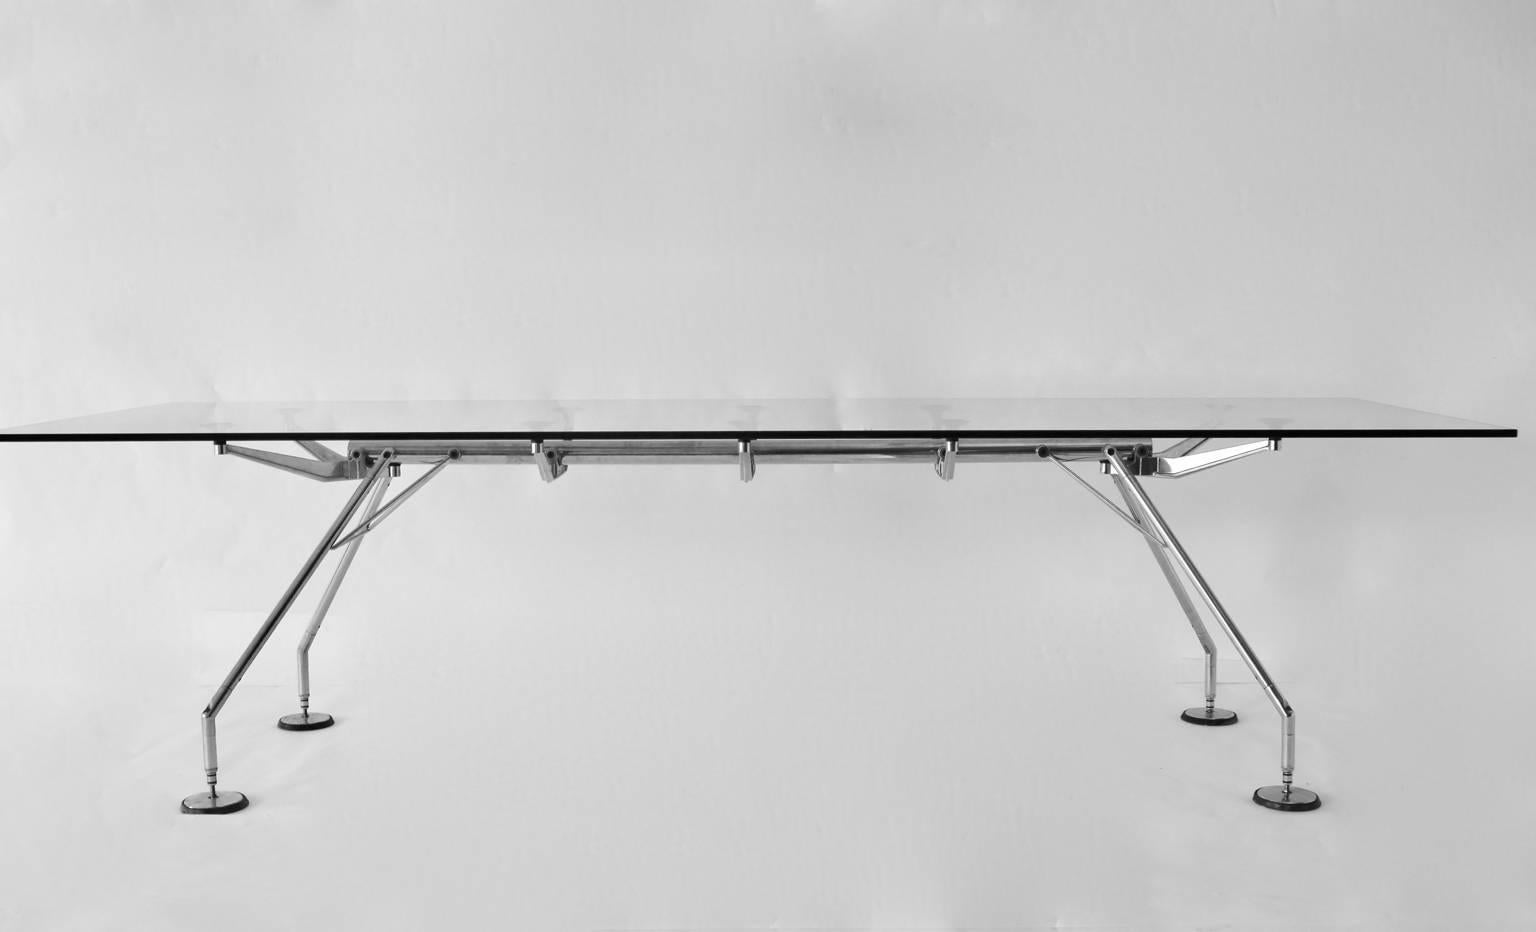 Modernist vintage Chrom und Glas Esstisch Konferenztisch Schreibtisch mit einer fantastischen Größe von 110,24 in Modell Nomos, entworfen von Sir Norman Foster, Vereinigtes Königreich, 1986 und hergestellt von Tecno, 1986, Italien.
Man fühlt sich in